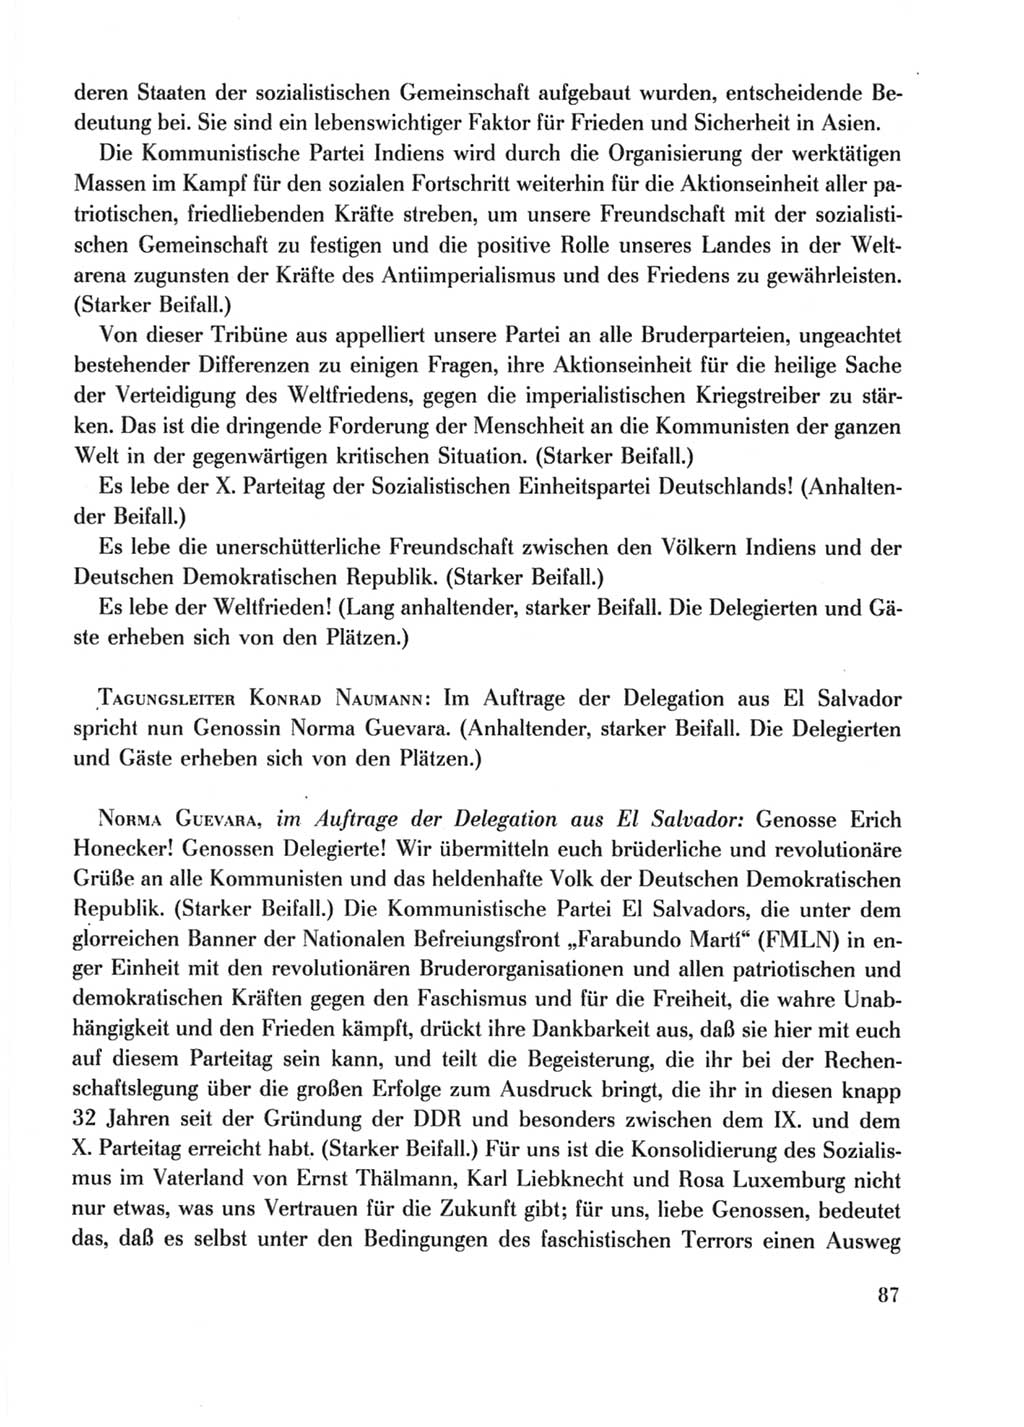 Protokoll der Verhandlungen des Ⅹ. Parteitages der Sozialistischen Einheitspartei Deutschlands (SED) [Deutsche Demokratische Republik (DDR)] 1981, Band 2, Seite 87 (Prot. Verh. Ⅹ. PT SED DDR 1981, Bd. 2, S. 87)